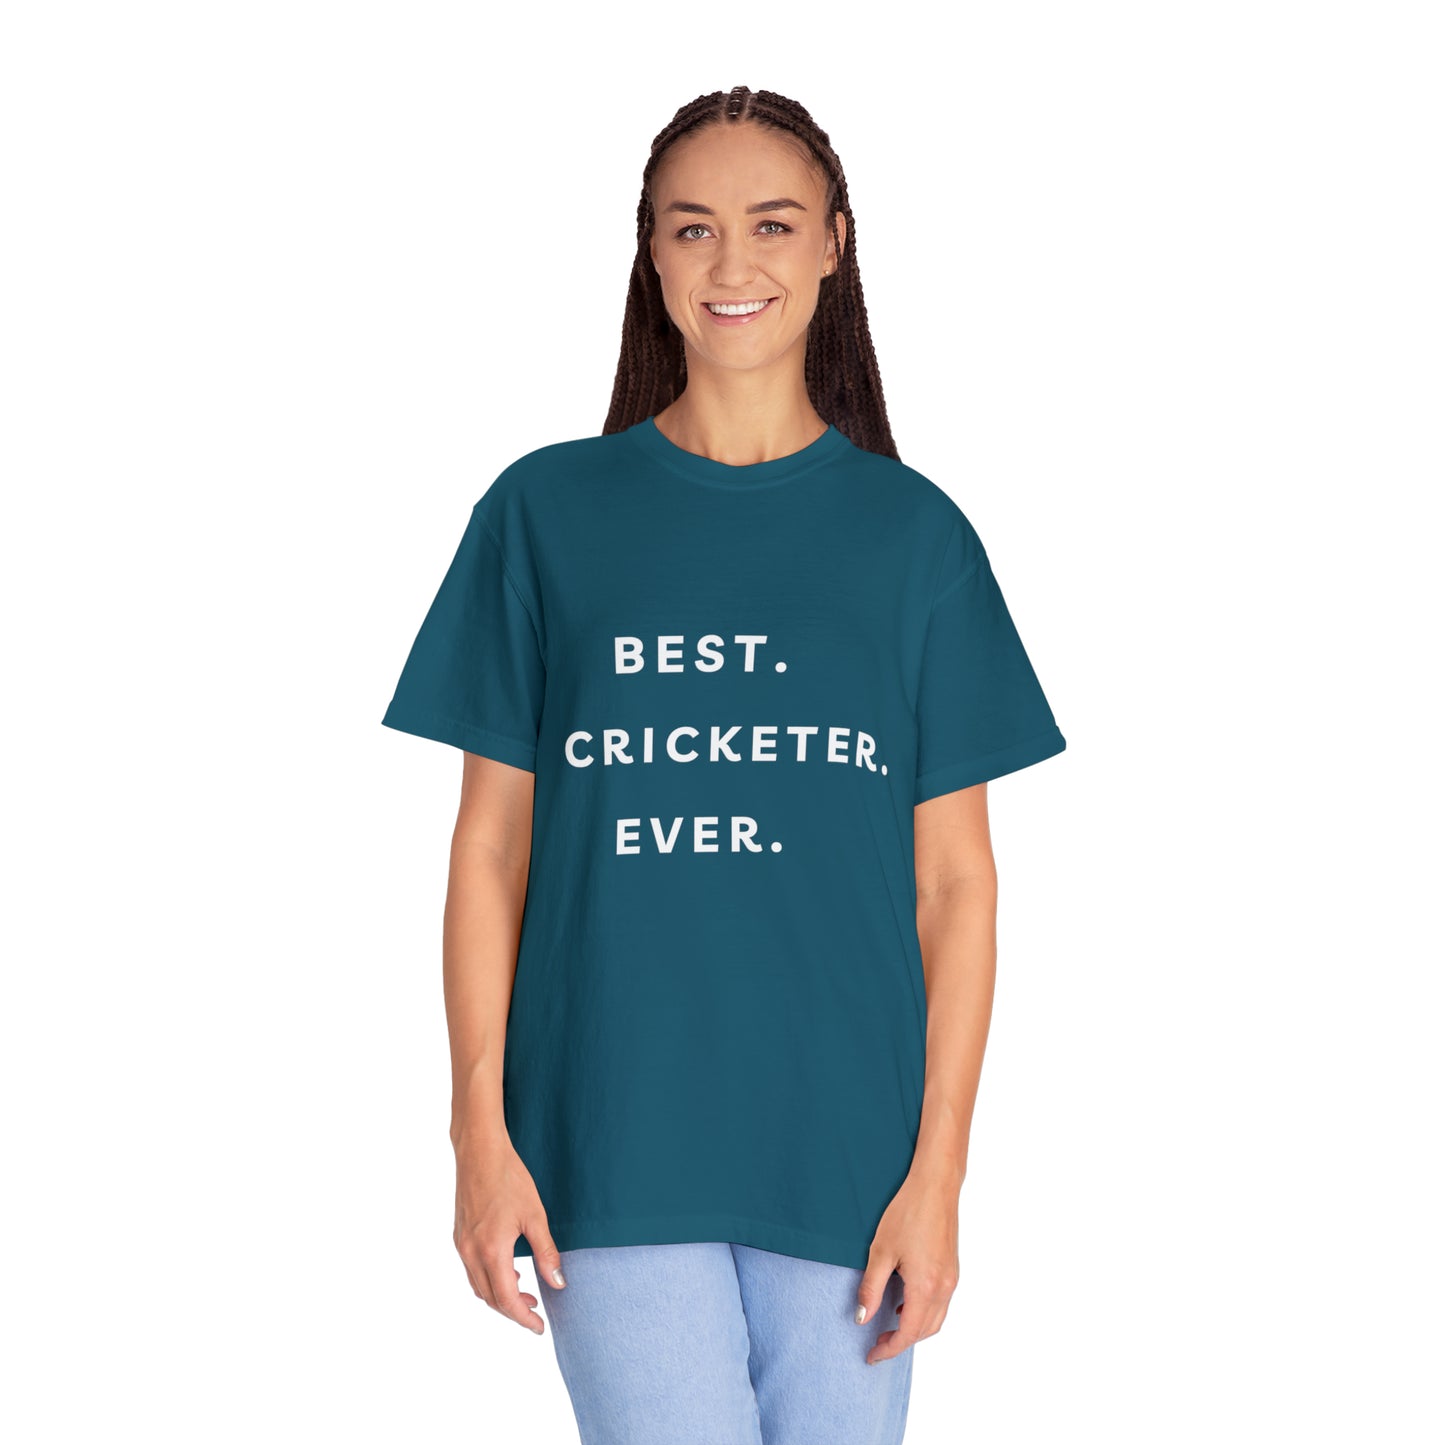 BEST CRICKERTER EVER T SHIRT Unisex Garment-Dyed T-shirt